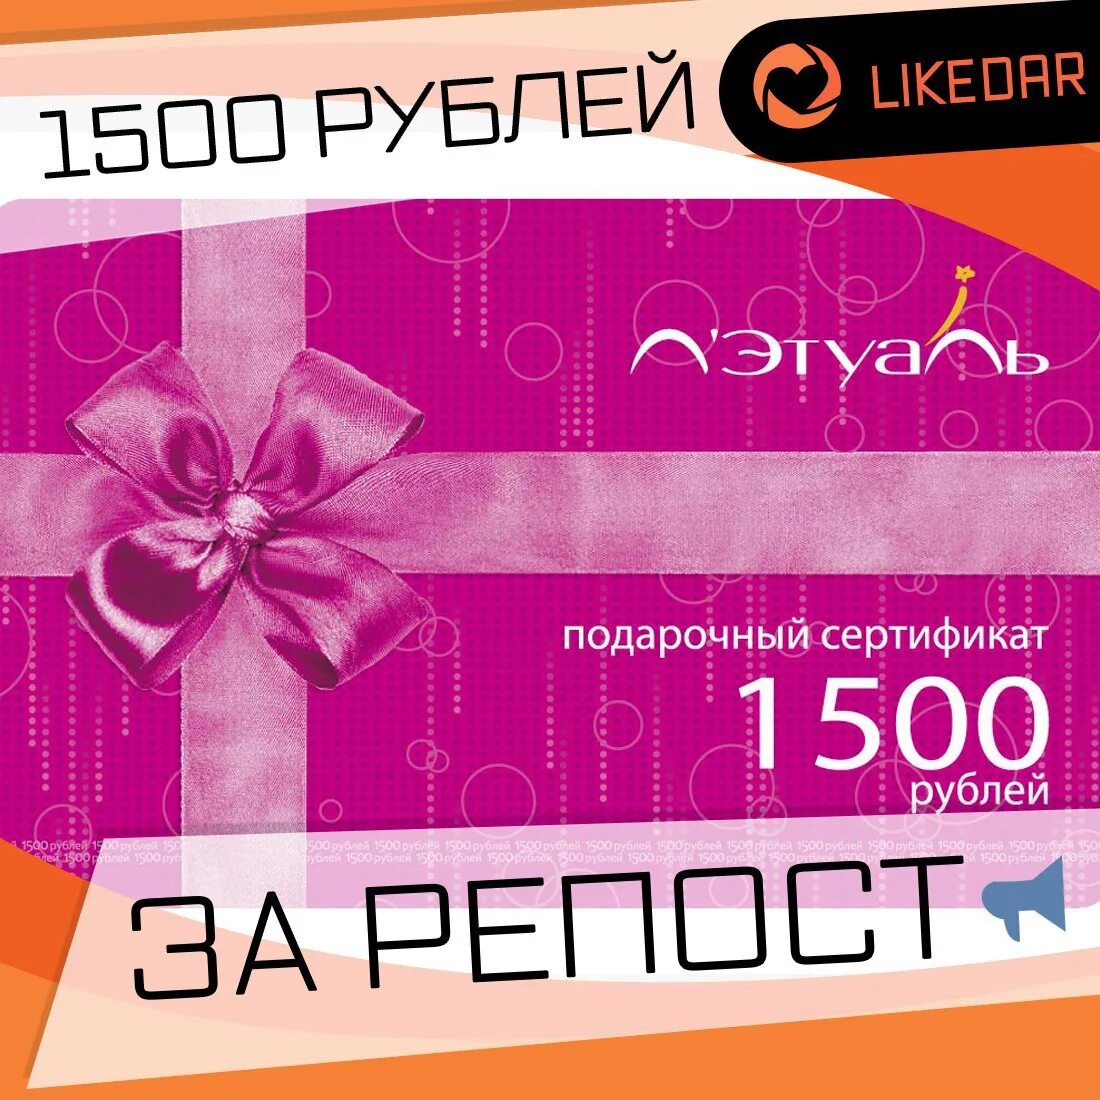 Можно сдать сертификат летуаль. Подарочный сертификат 1500 рублей. Подарочная карта. Этуаль подарочный сертификат. Подарочный сертификат на 1500 руб.